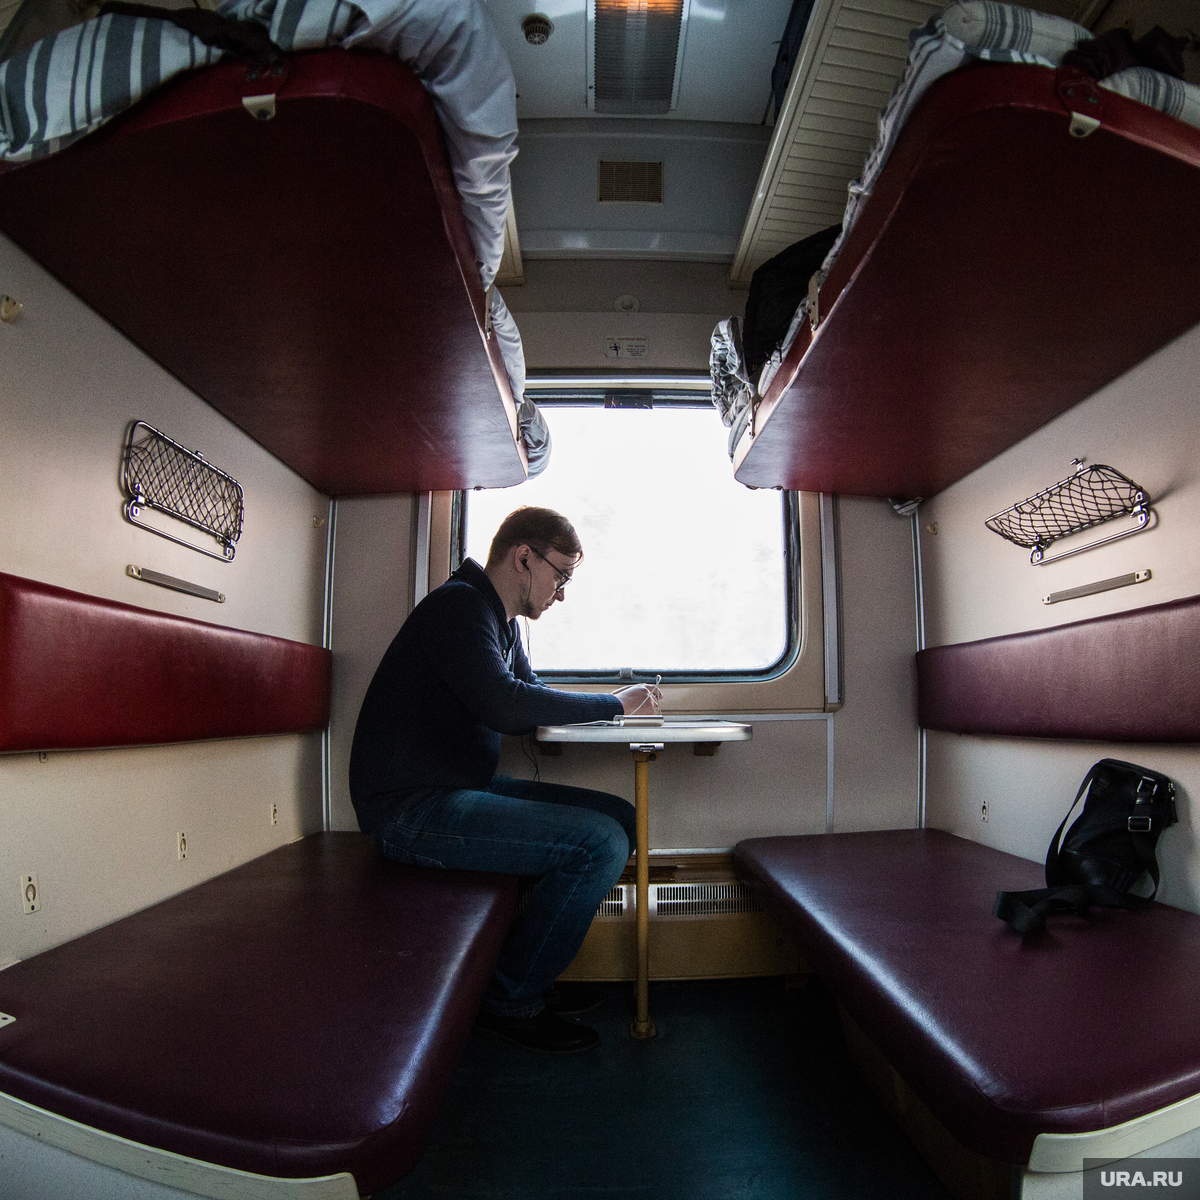 Вагоны люкс в поездах РЖД: как выглядят и что входит в стоимость